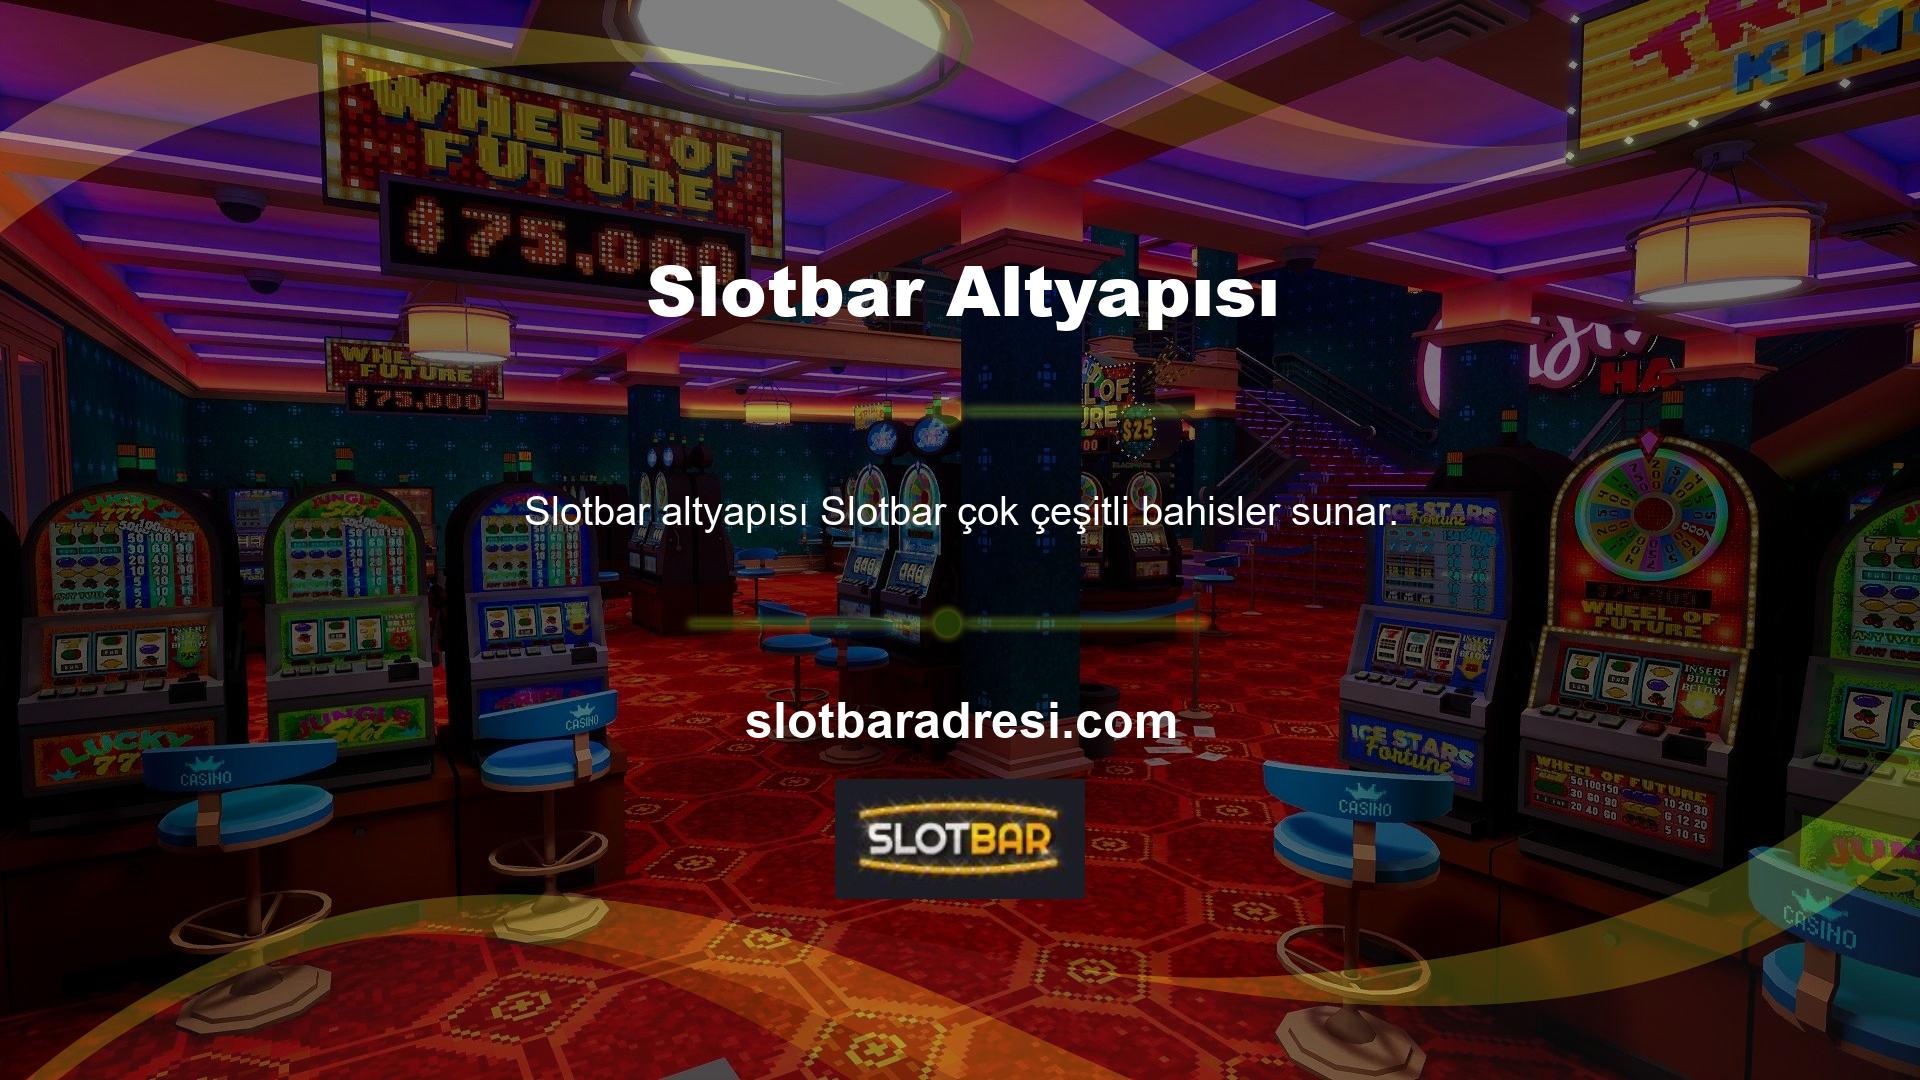 Slotbar, sporu ve casino seven casino severlerin uğrak yeri haline geldi ve üyelikleri her geçen gün artıyor